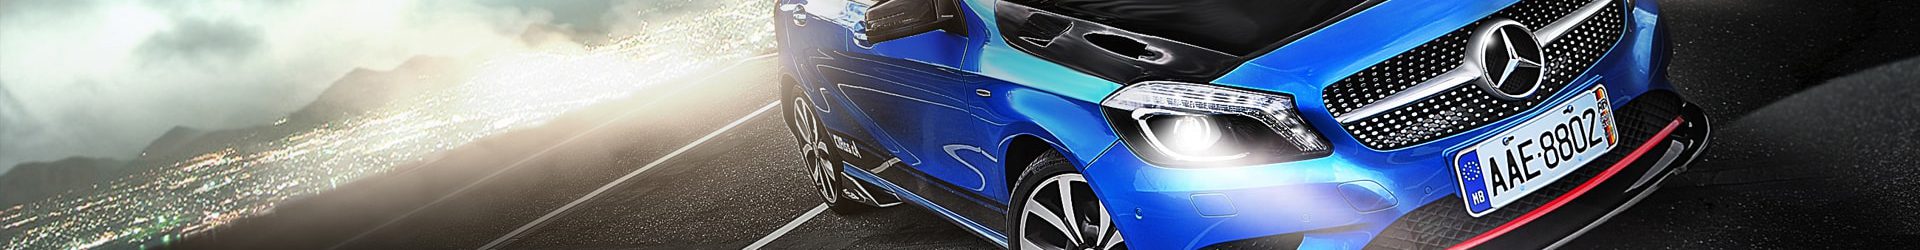 –低調野獸– BMW F10 M5 Facelift 小改款 開箱拍攝